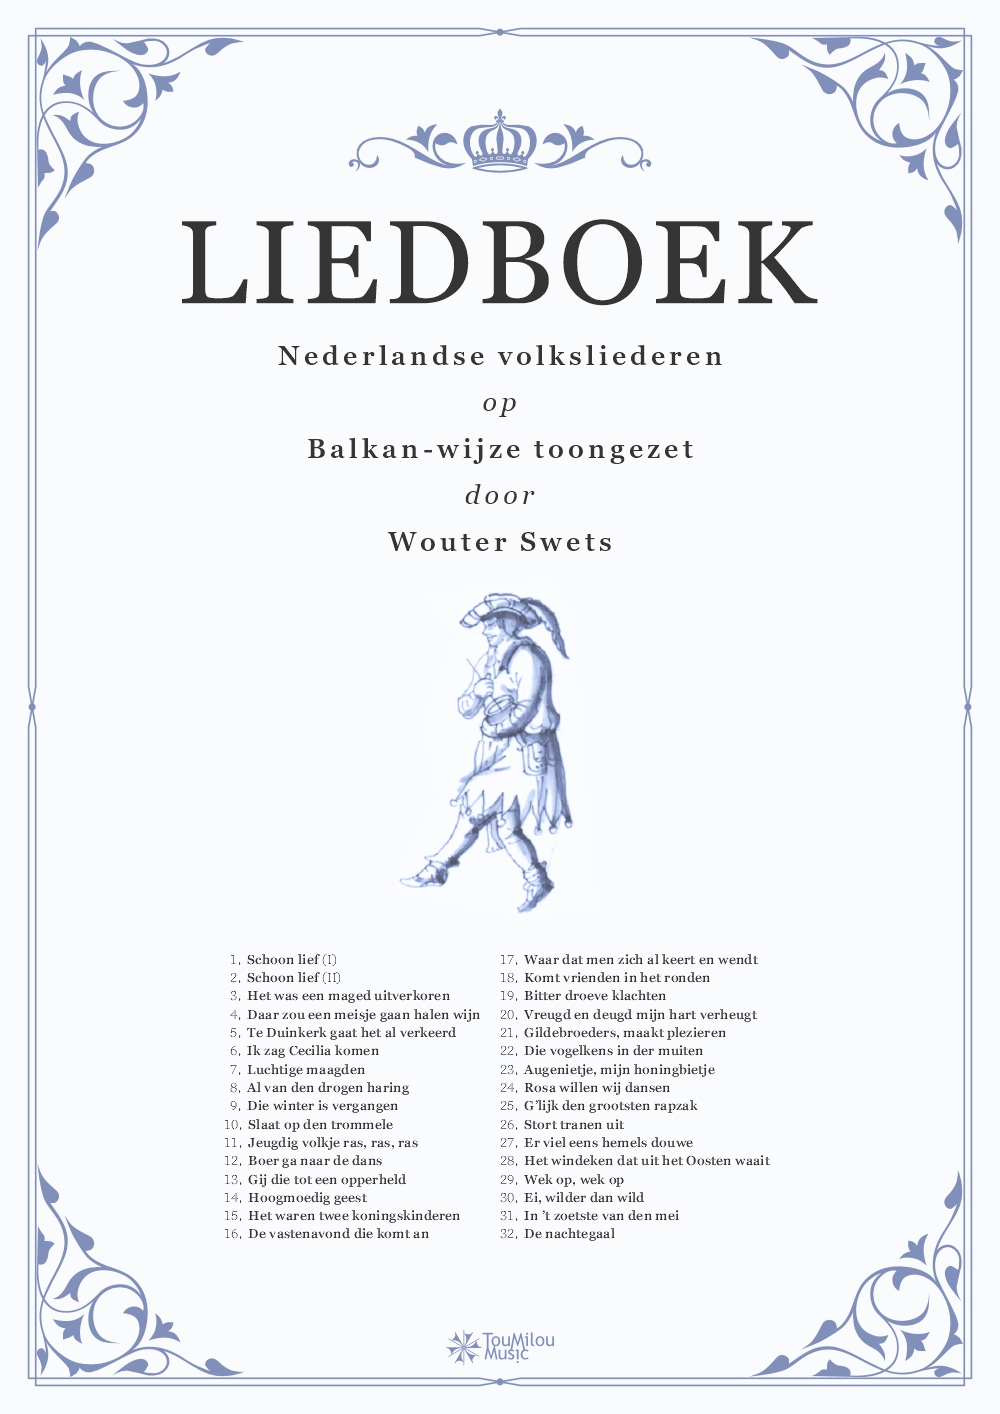 Liedboek - Nederlandse volksmuziek op Balkan-wijze toongezet door Wouter Swets (Michiel van der Meulen, 2023)